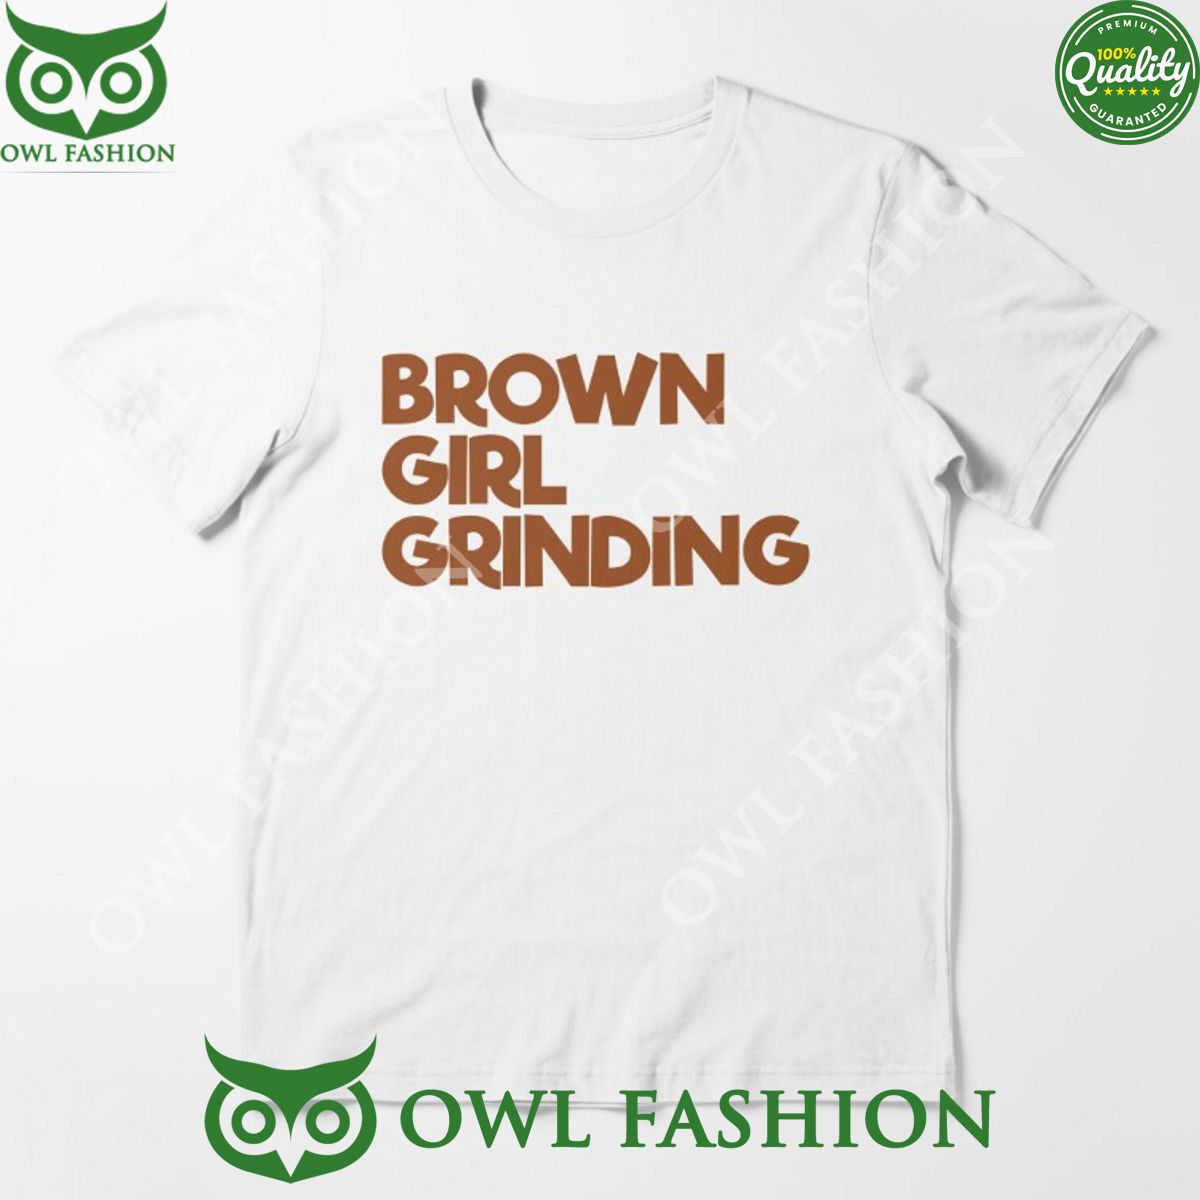 brown girl grinding t shirt entrepreneur essential 1 nJEjG.jpg